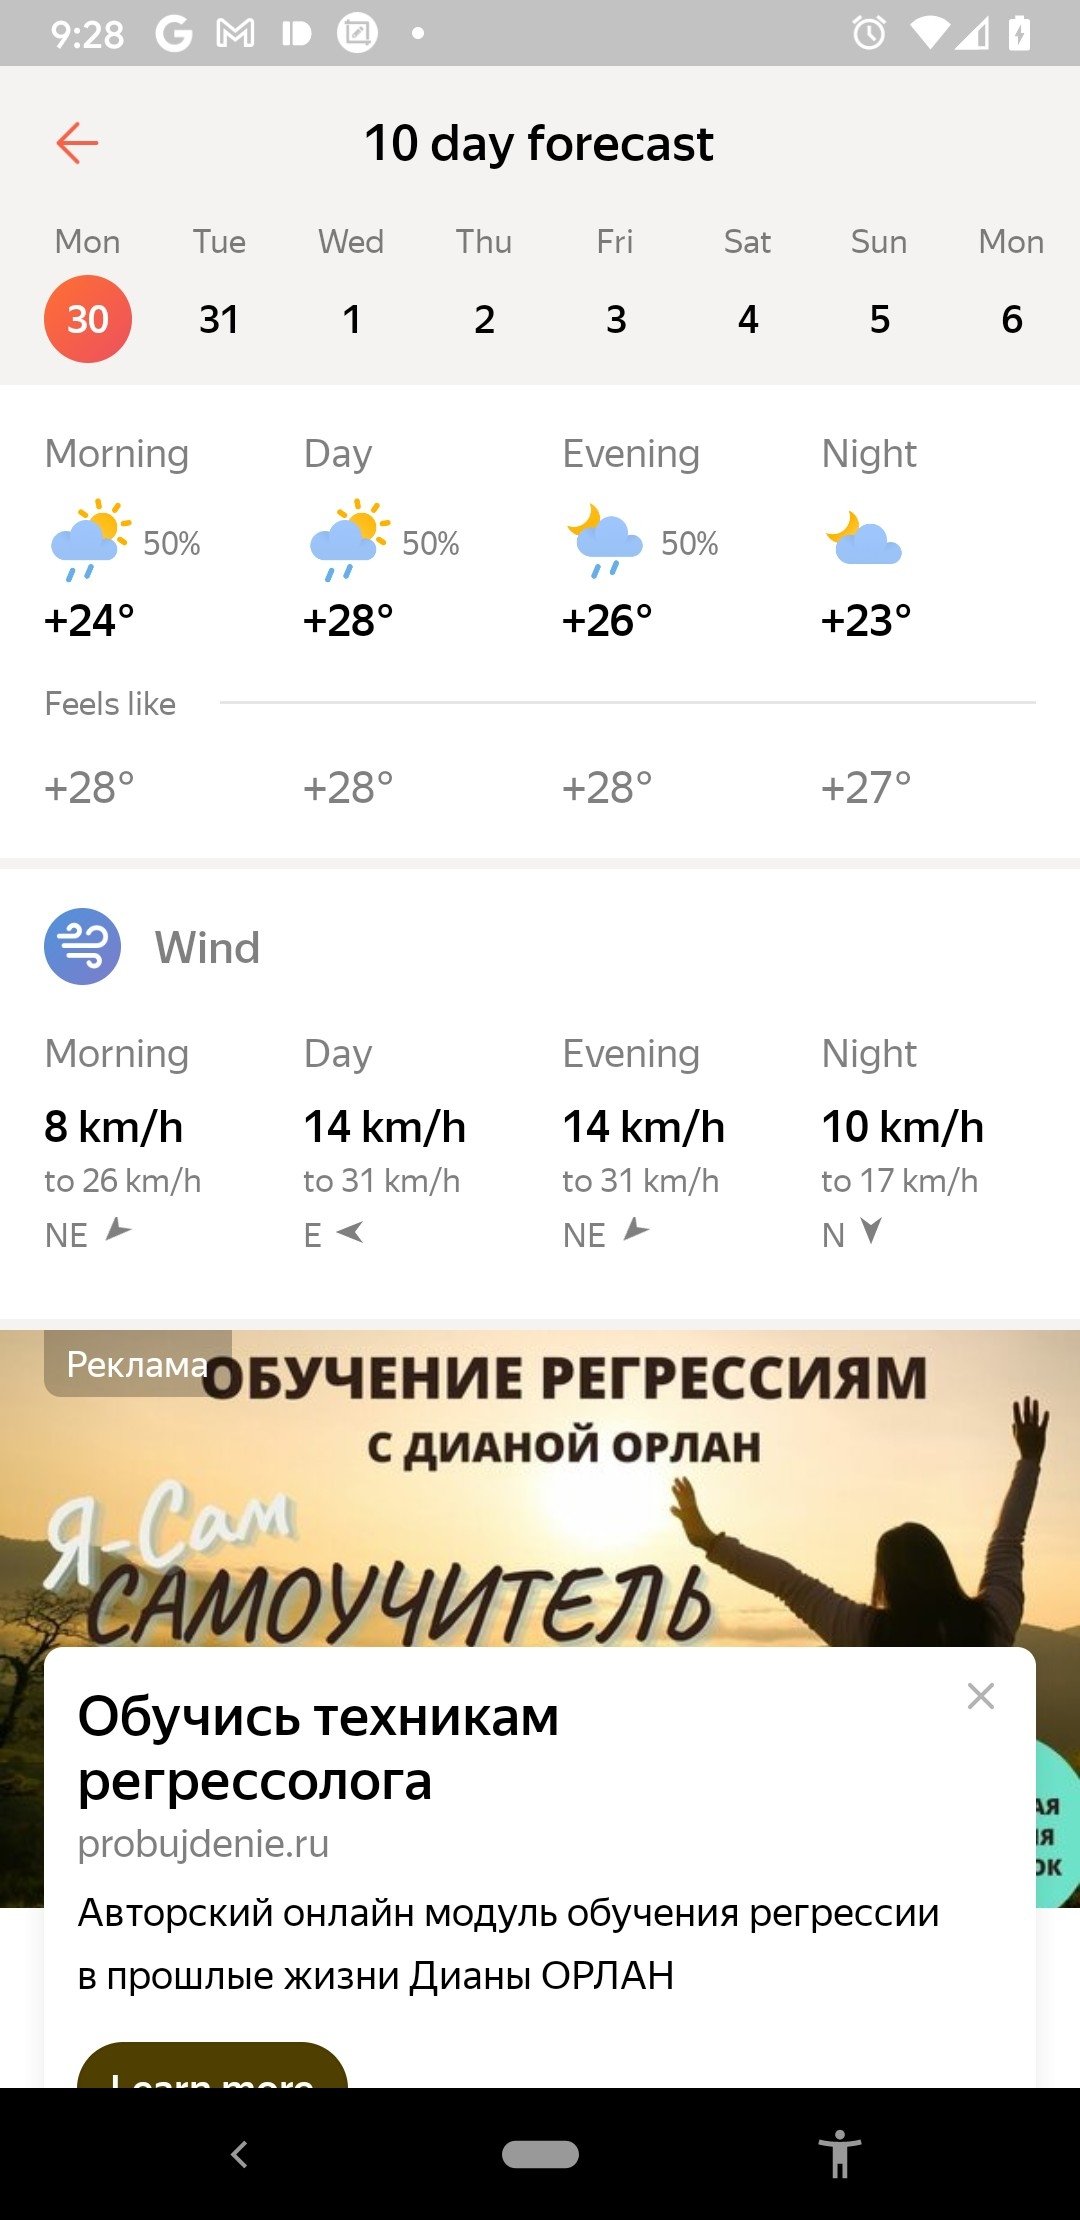 Яндекс.Погода 11.28.1 - Скачать для Android APK бесплатно